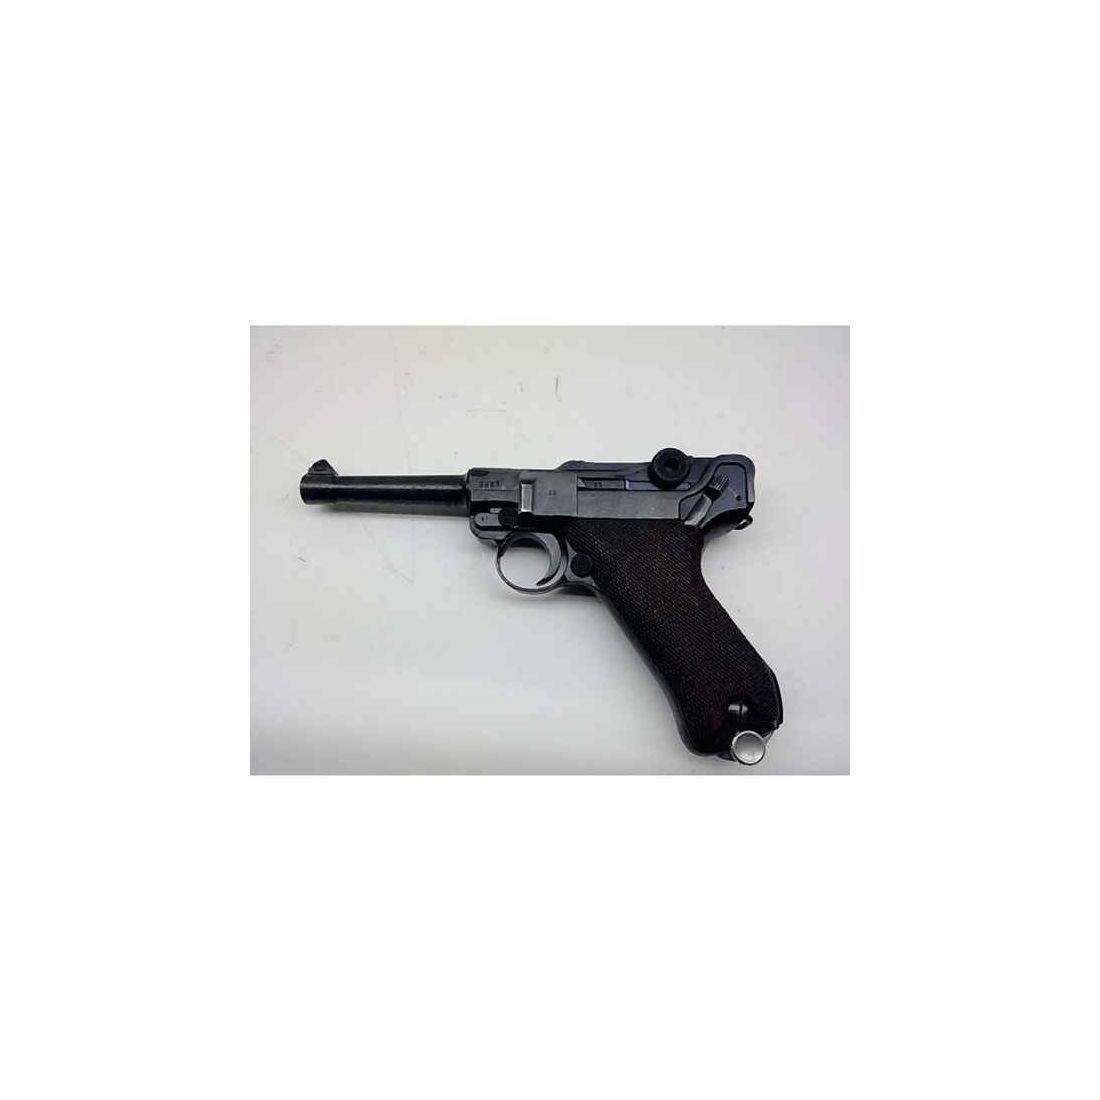 Pistole Mauser P08 Kal.9mm Luger gebraucht